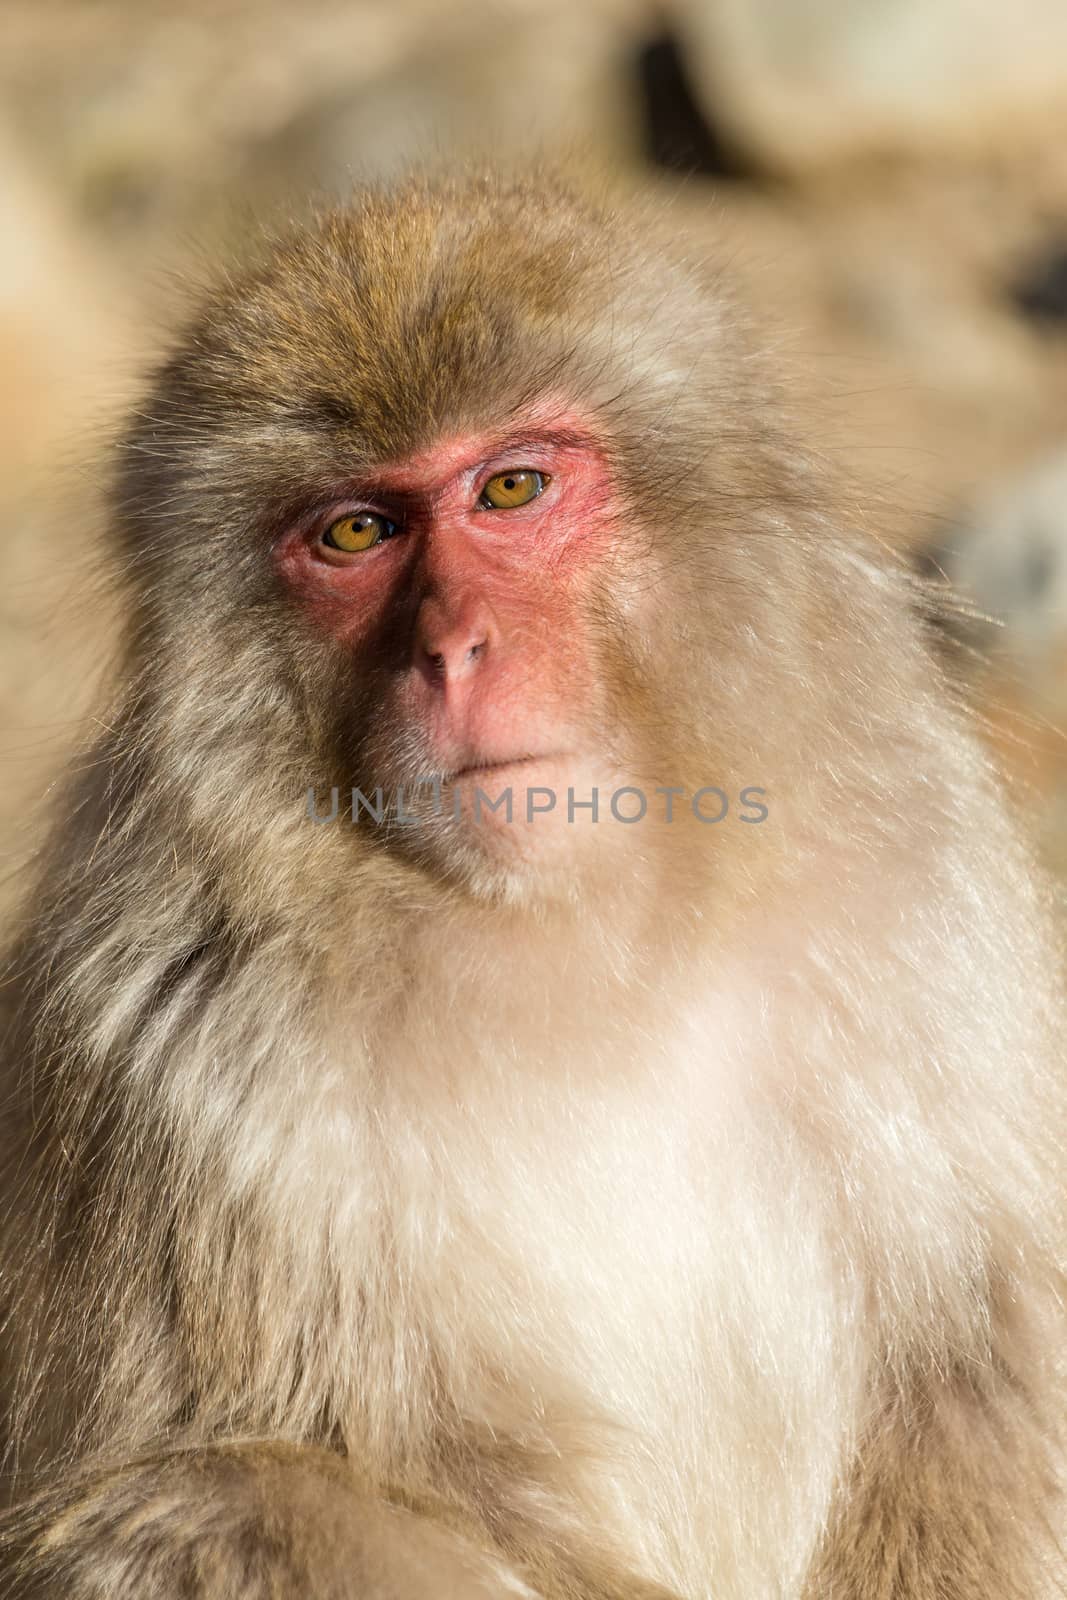 Monkey by leungchopan